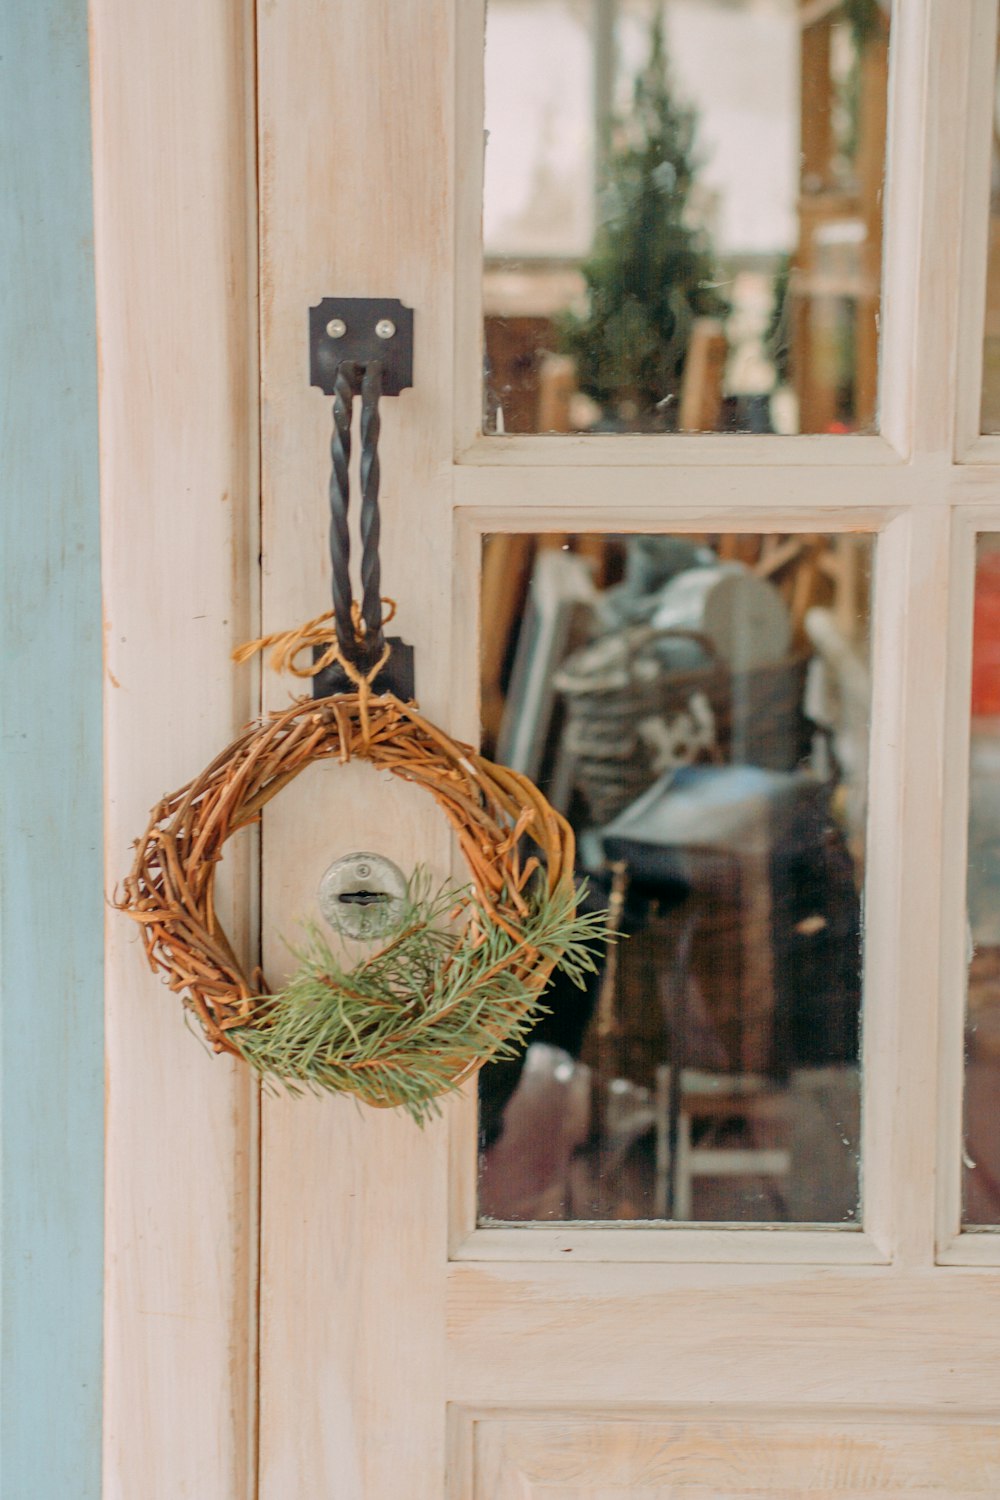 brown wicker basket hanged on window